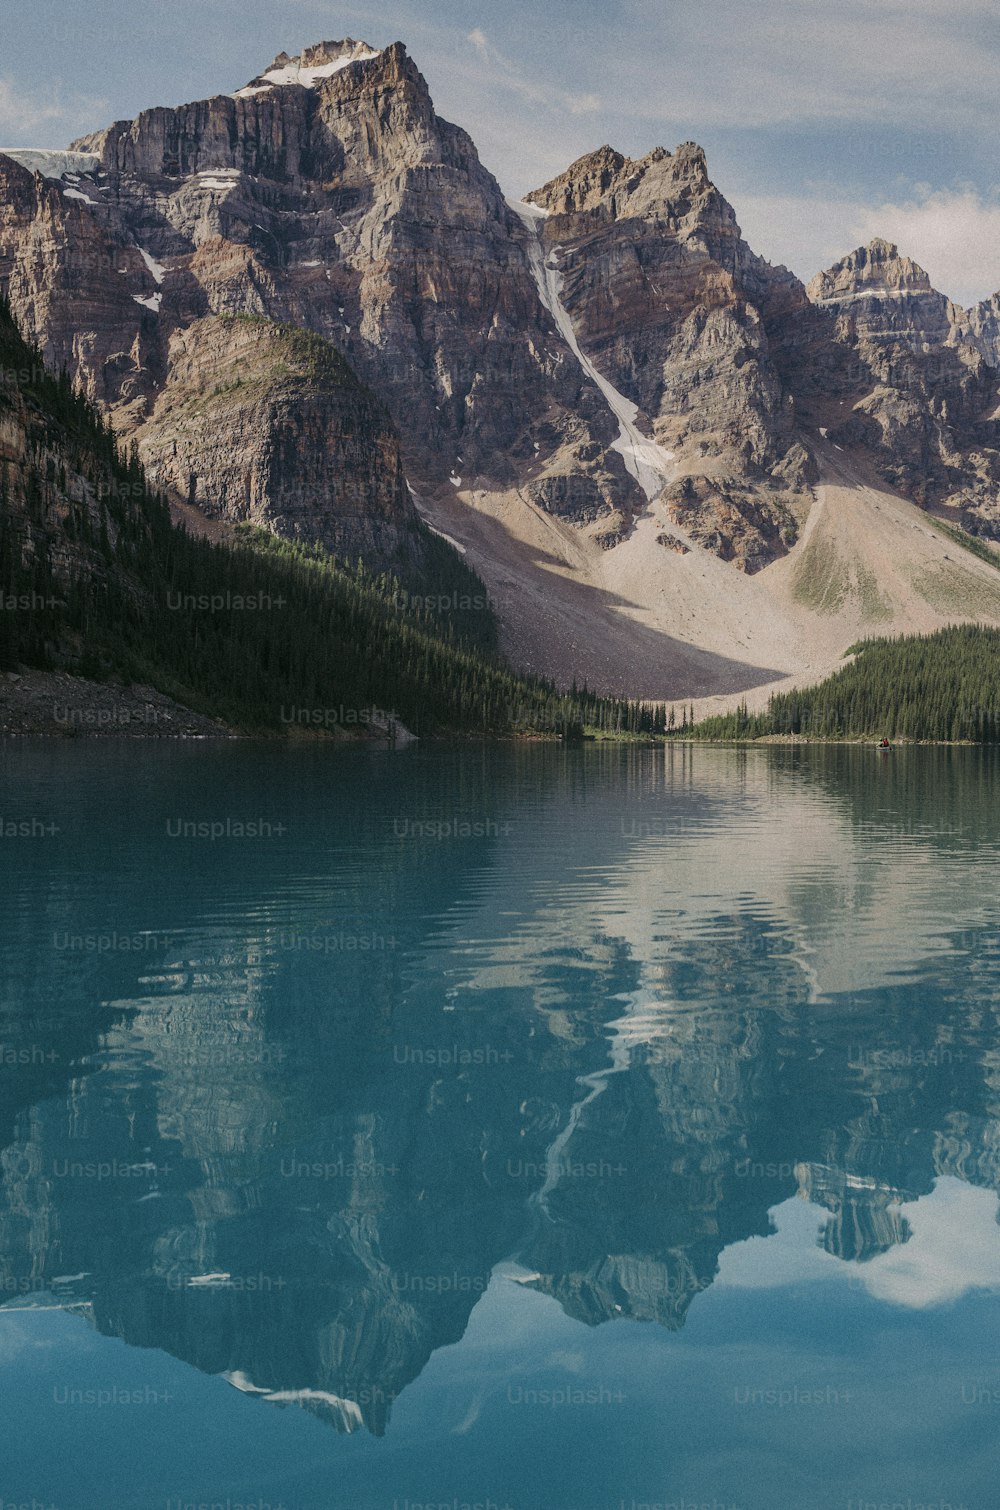 Una catena montuosa si riflette nell'acqua ferma di un lago